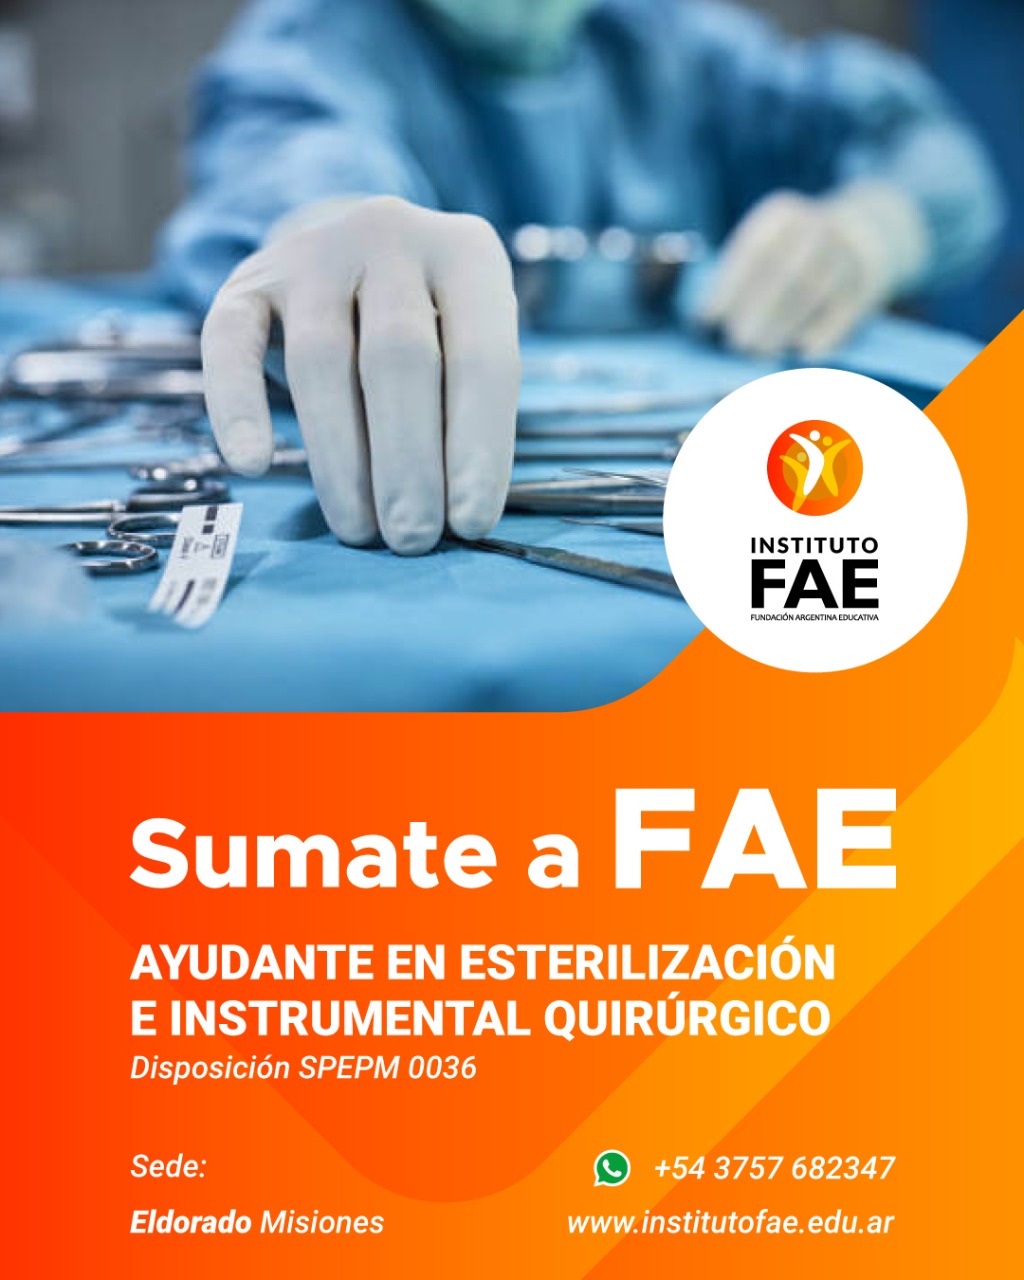  Instituto FAE